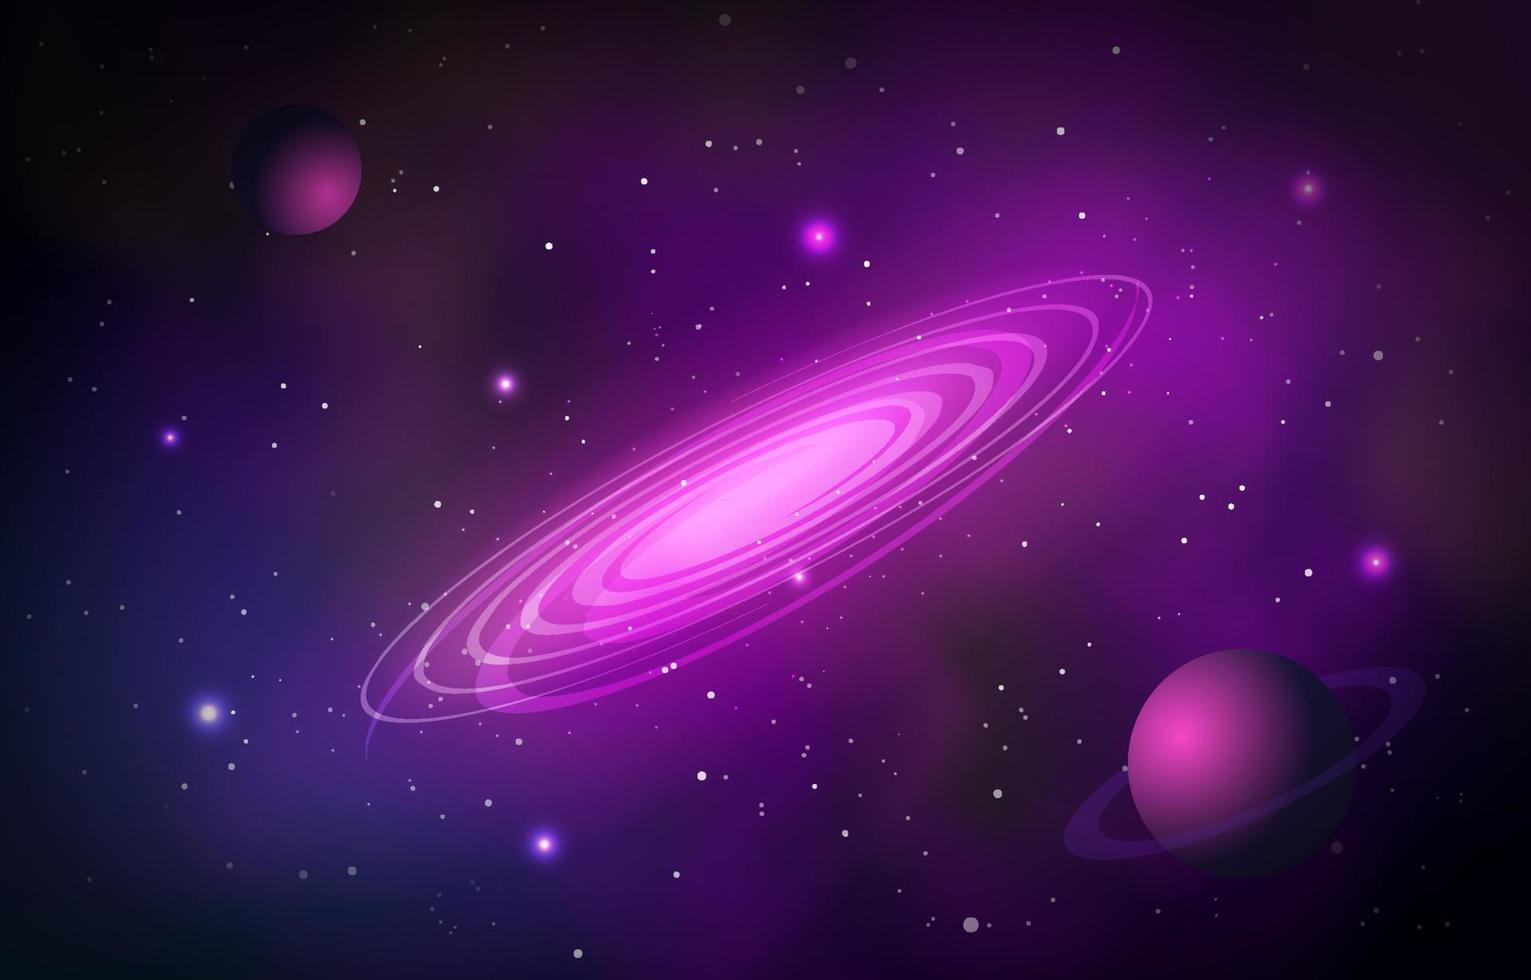 Milkyway Galaxy Background vector